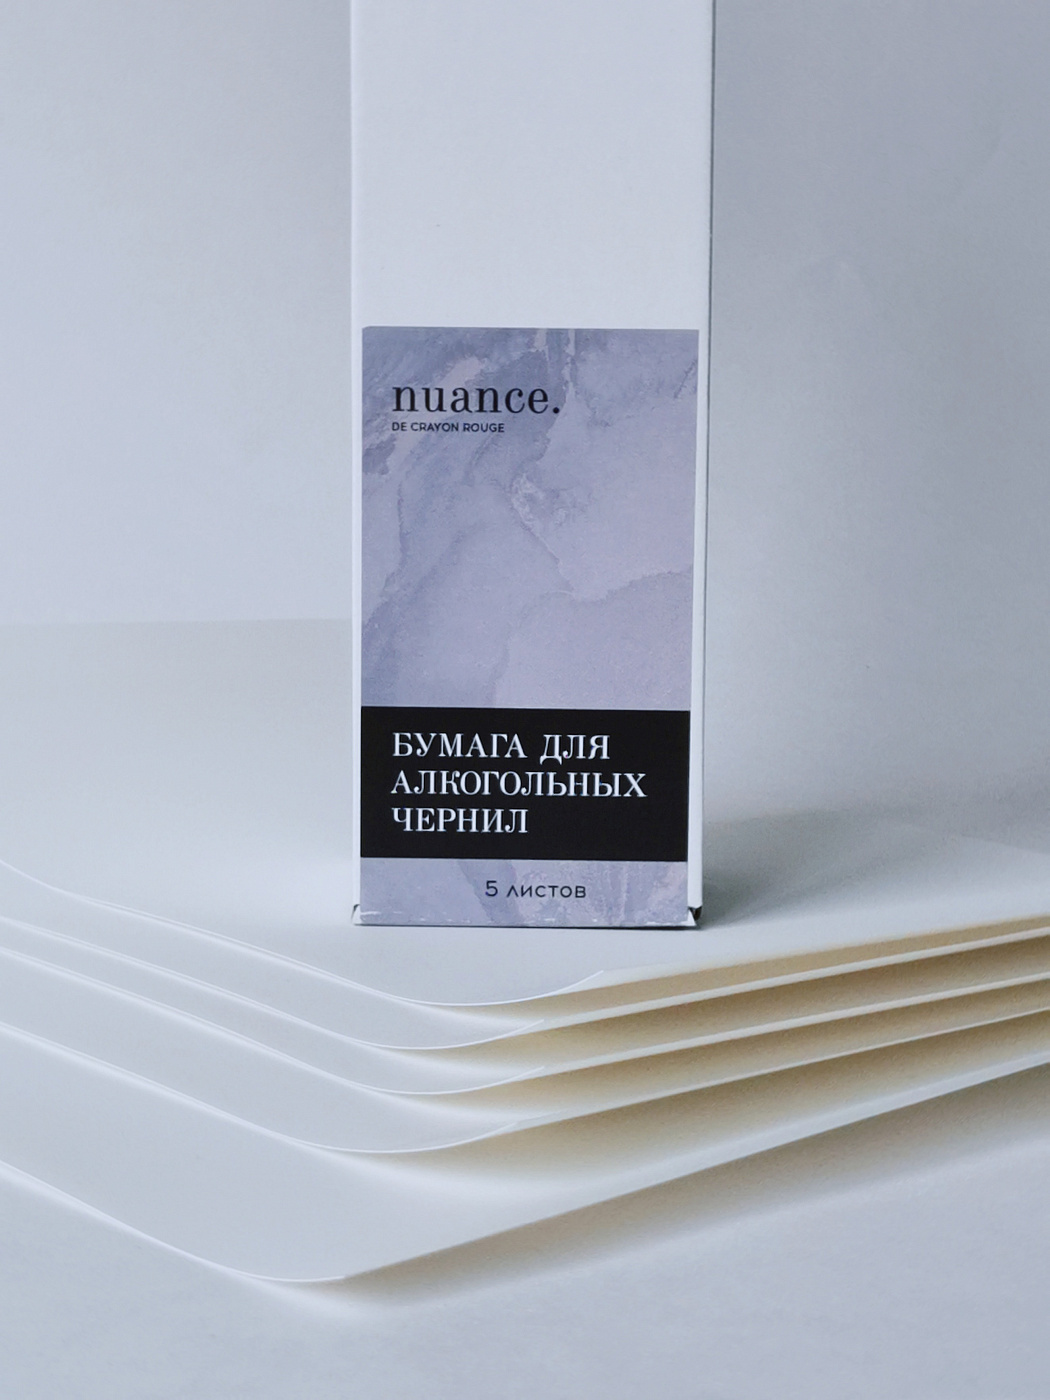 Набор бумаги синтетической (для алкогольных чернил), nuance., 23 х 35 см, 5 листов дырокол elegance erich krause 10 листов